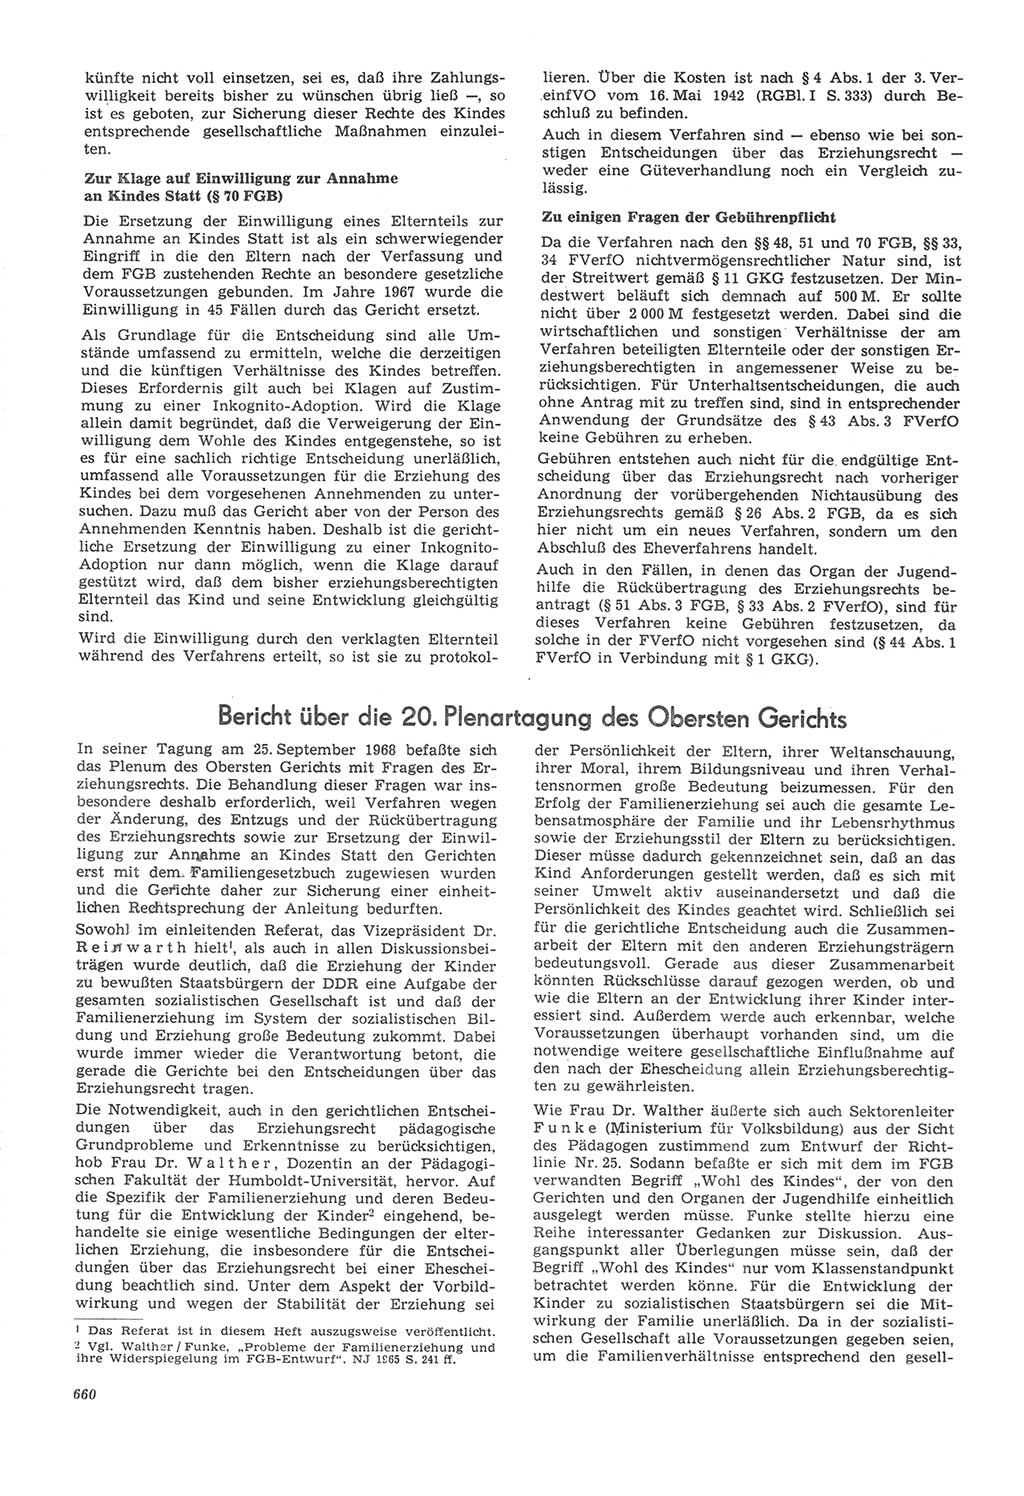 Neue Justiz (NJ), Zeitschrift für Recht und Rechtswissenschaft [Deutsche Demokratische Republik (DDR)], 22. Jahrgang 1968, Seite 660 (NJ DDR 1968, S. 660)